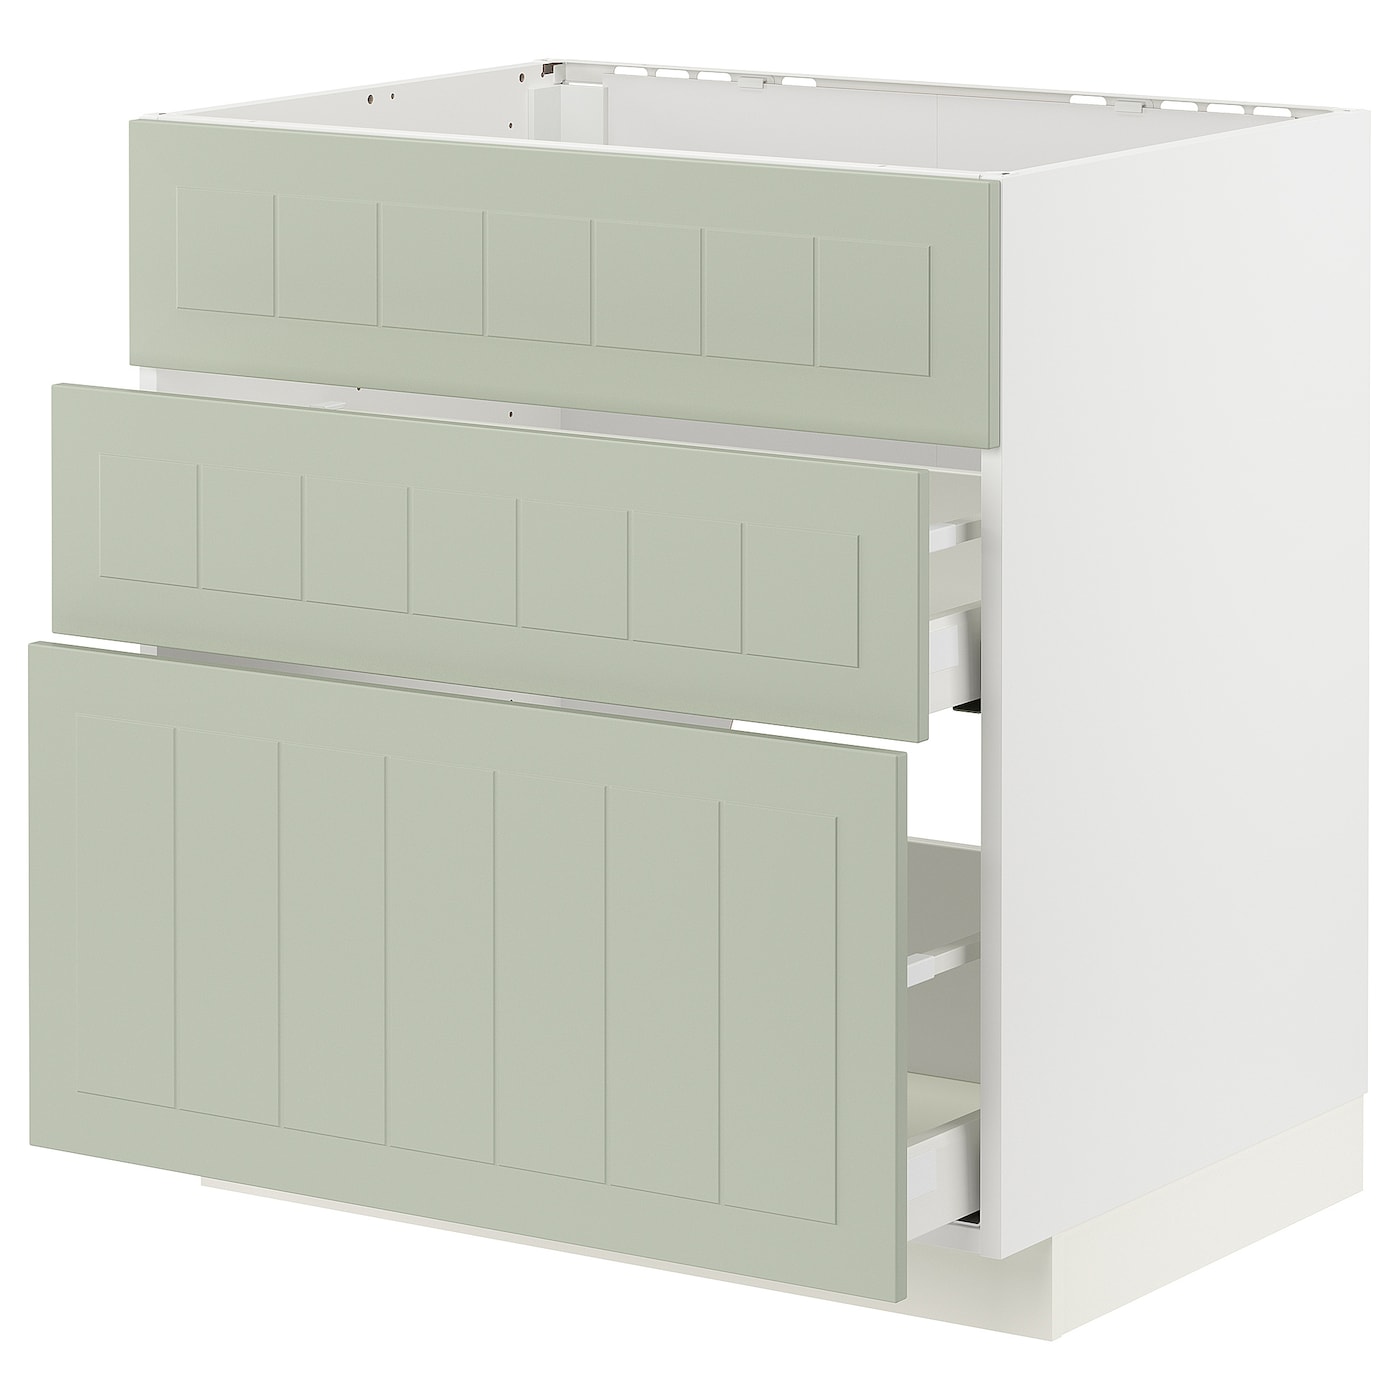 Напольный шкаф - METOD / MAXIMERA IKEA/ МЕТОД/ МАКСИМЕРА ИКЕА,  80х80 см, белый/светло-зеленый